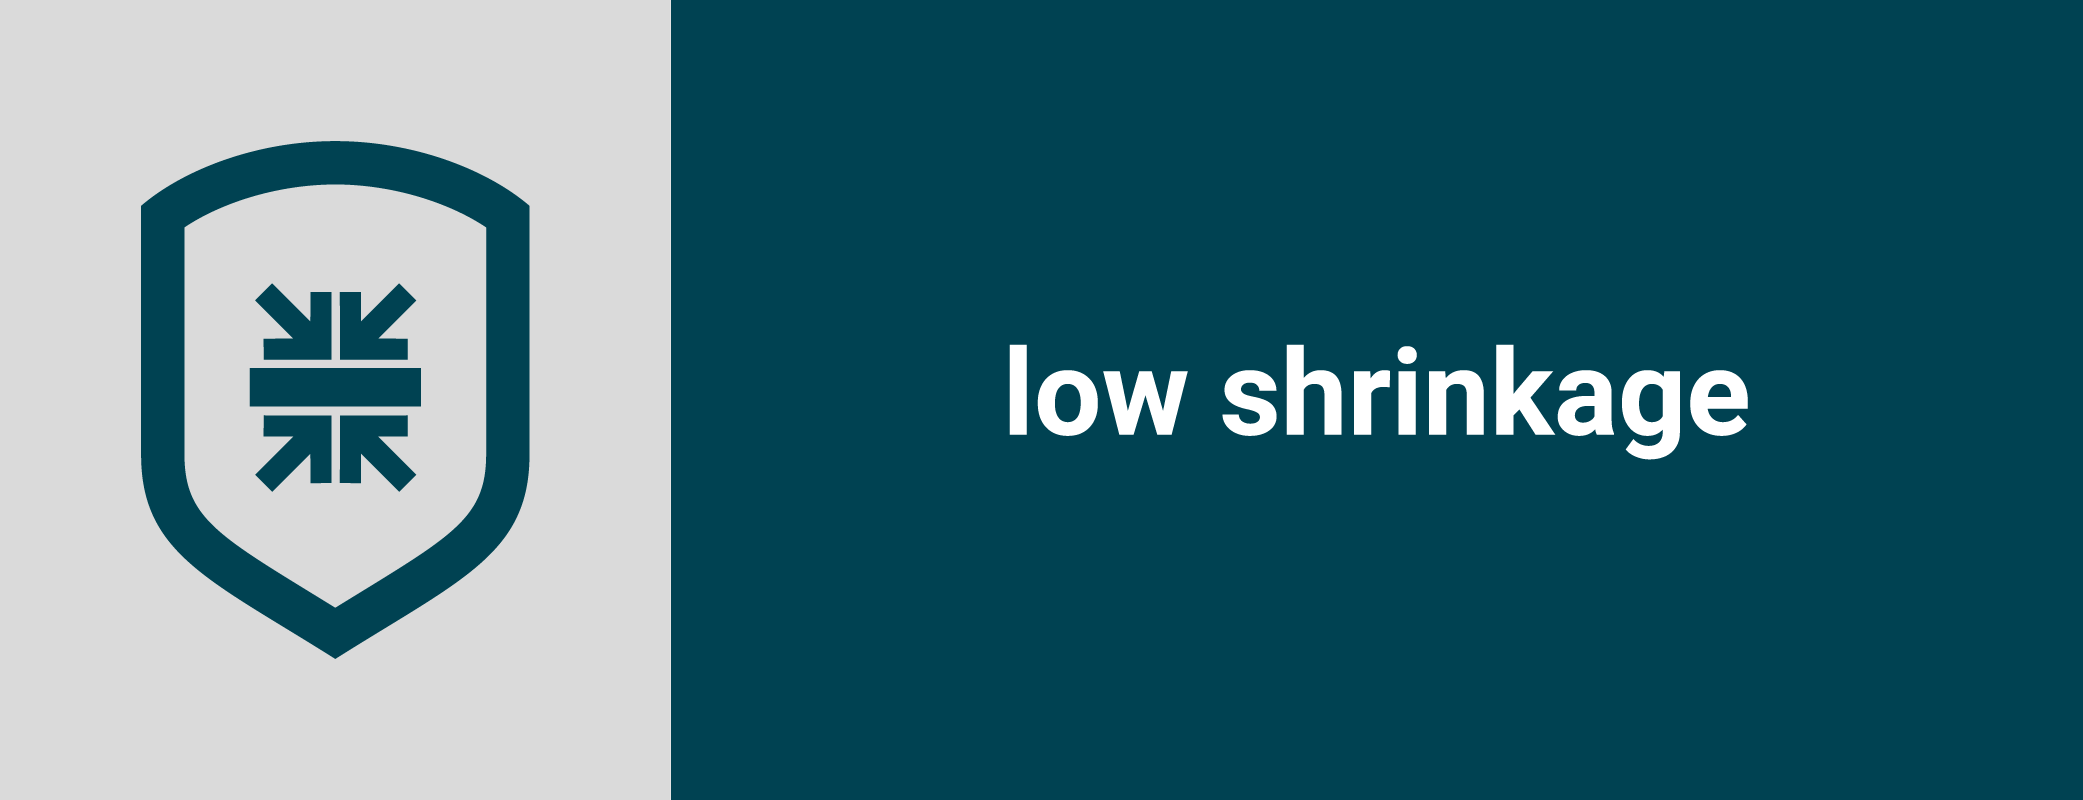 low shrinkage